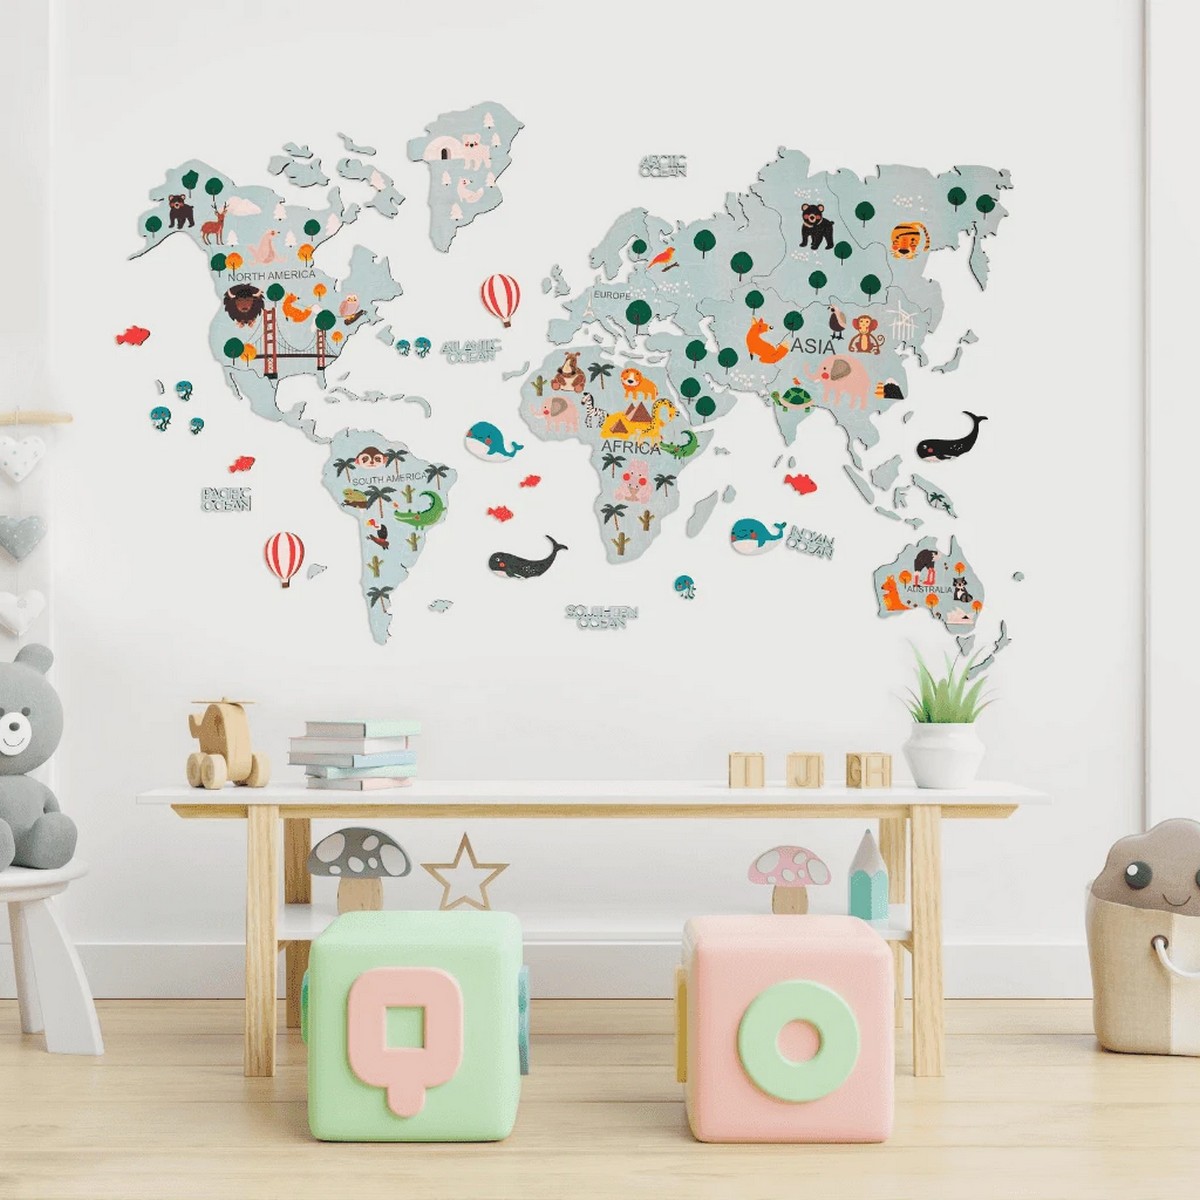 نقشه جهان کودکان روی دیوار